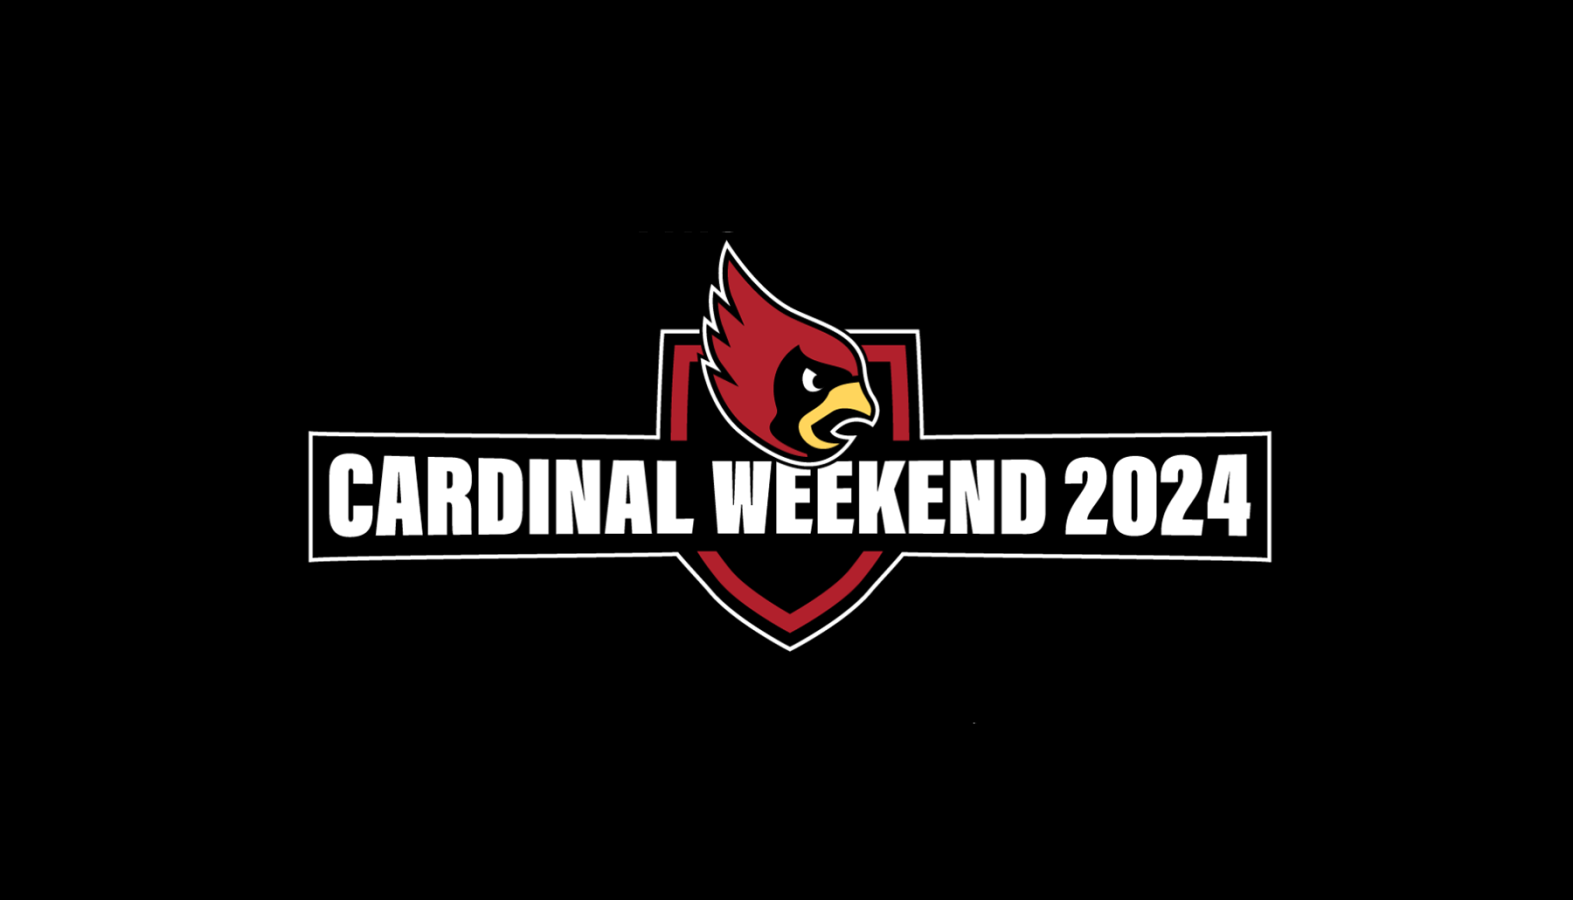 Cardinal Weekend 2024 logo